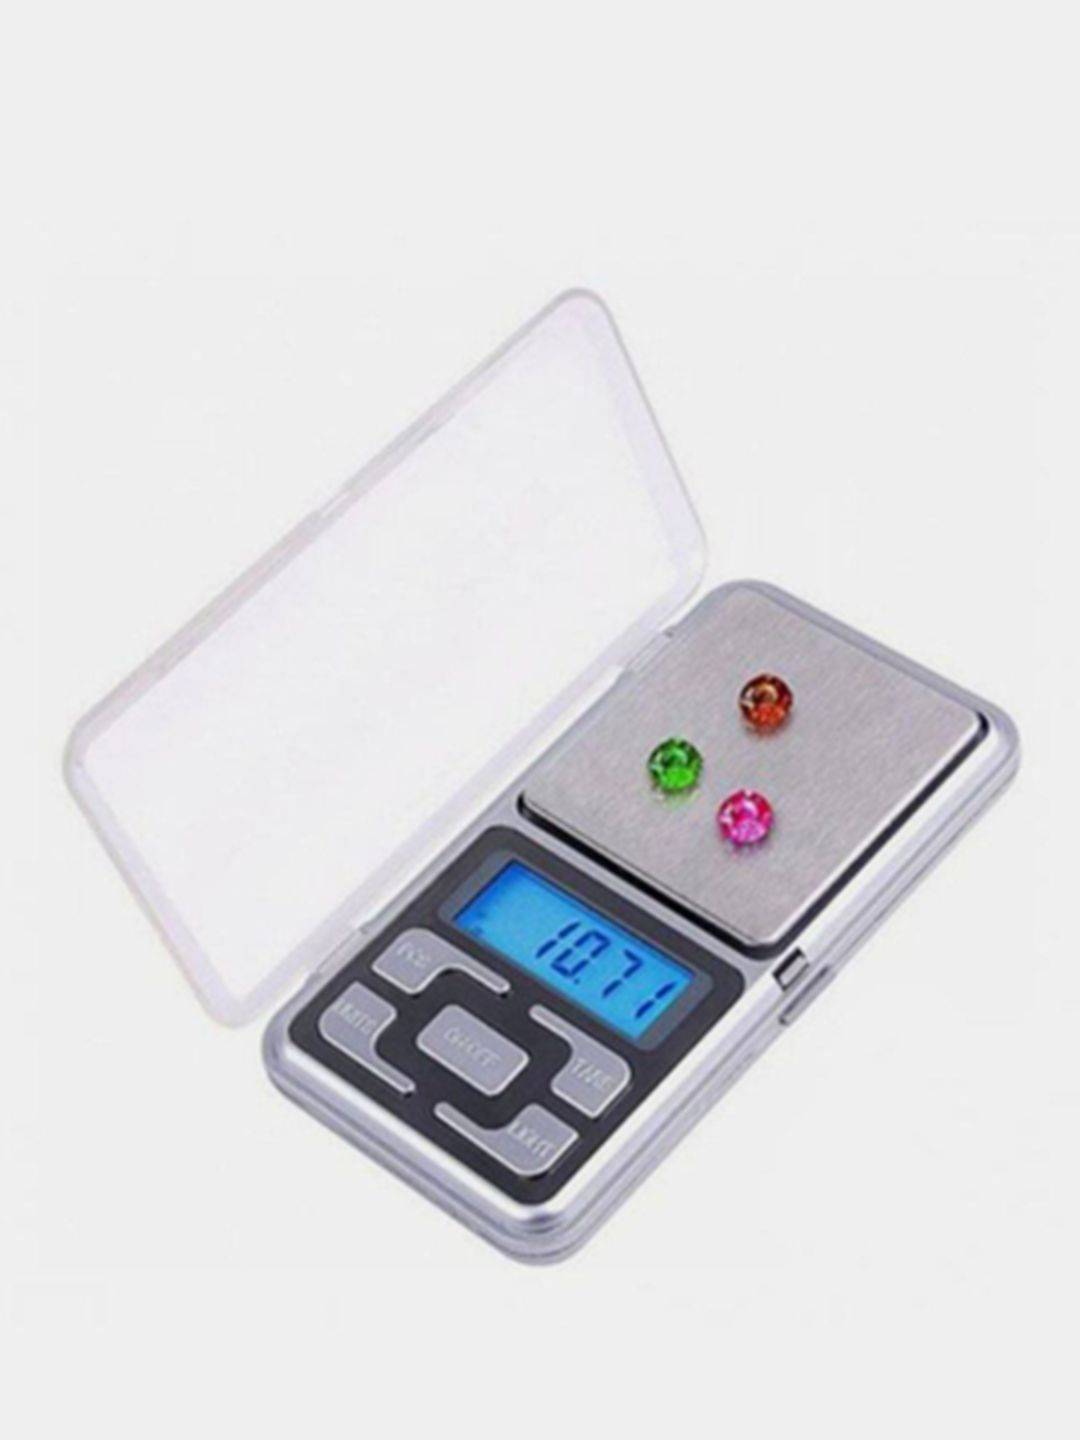 Портативные электронные купить. Весы Pocket Scale MH-200. Весы Pocket Scale MH-100. Pocket Scale MH-500 весы ювелирные электронные карманные 500 г/0,1 г. Весы портативные Эл. MH-500 Pocket Scale 500гр точность 0,1гр.